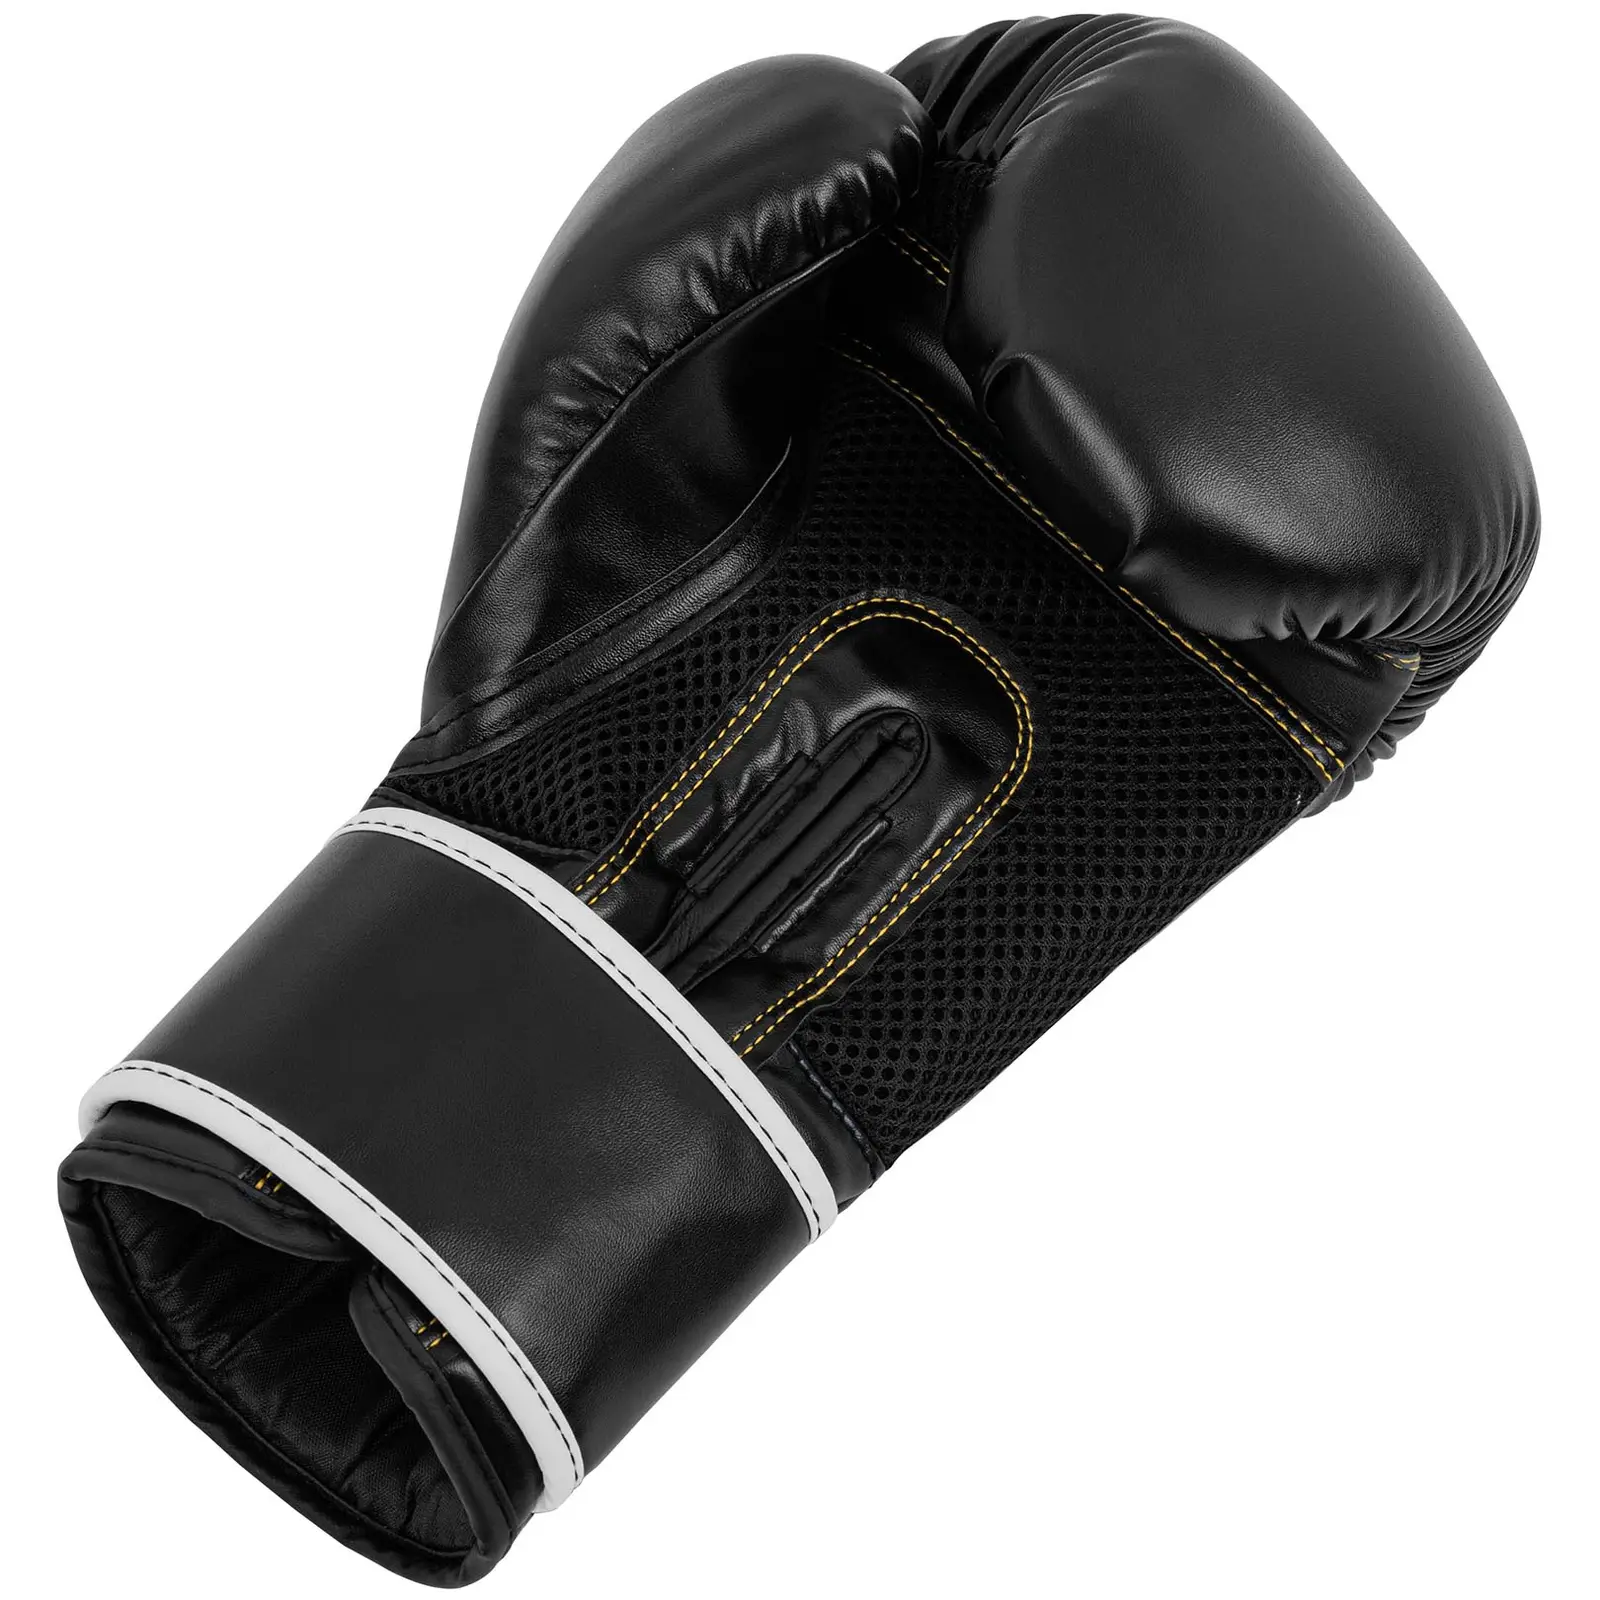 Boxerské rukavice - 14 oz - síťovina uvnitř - černé